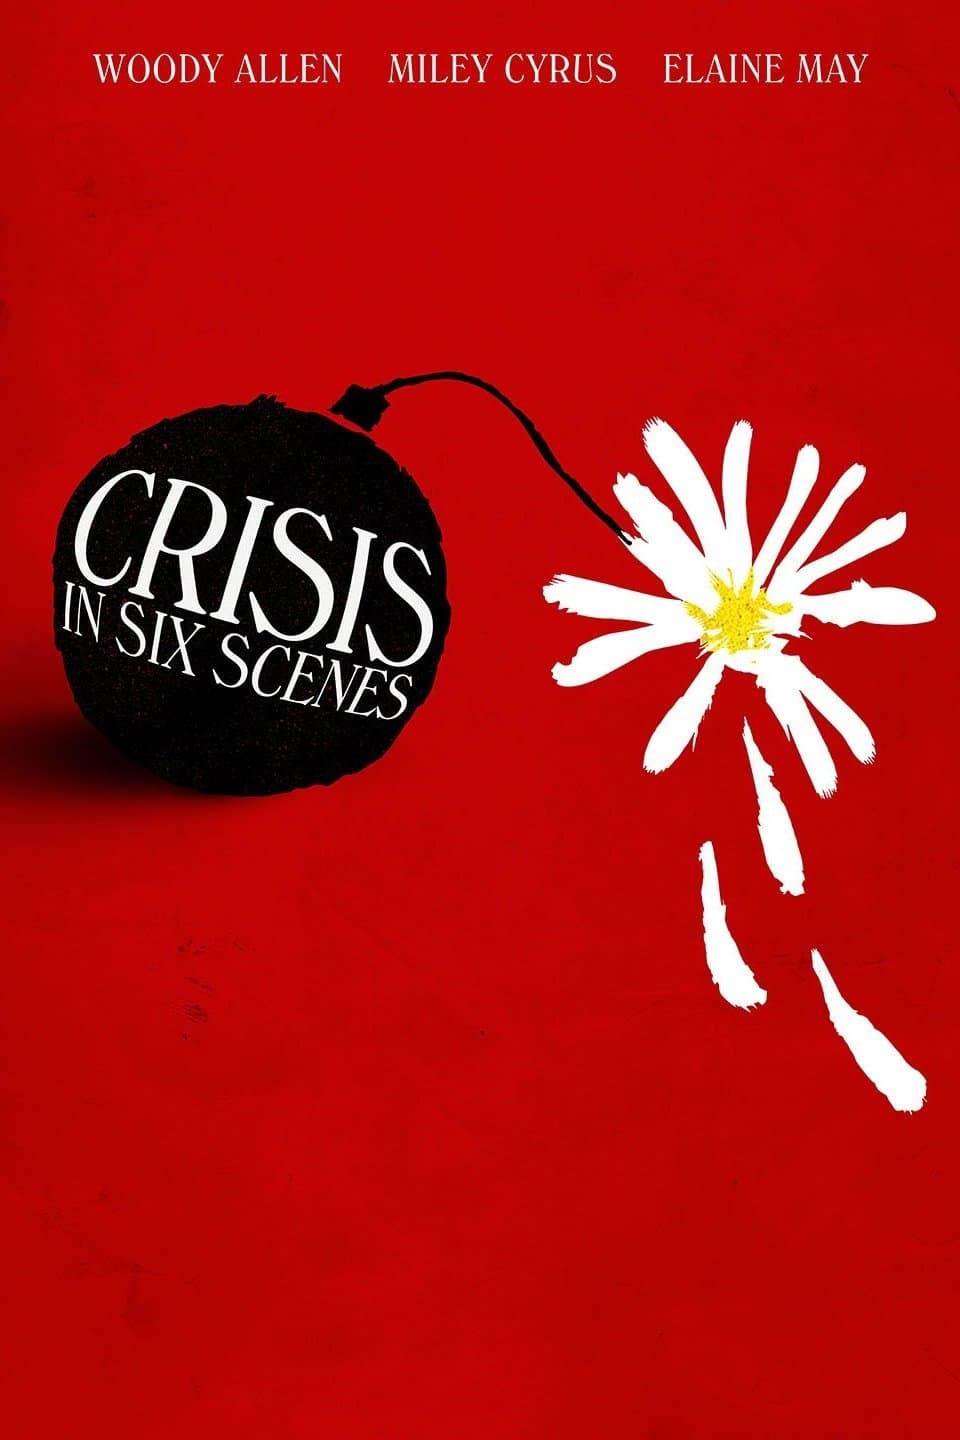 Caratula de CRISIS IN SIX SCENES (Crisis en seis escenas) 